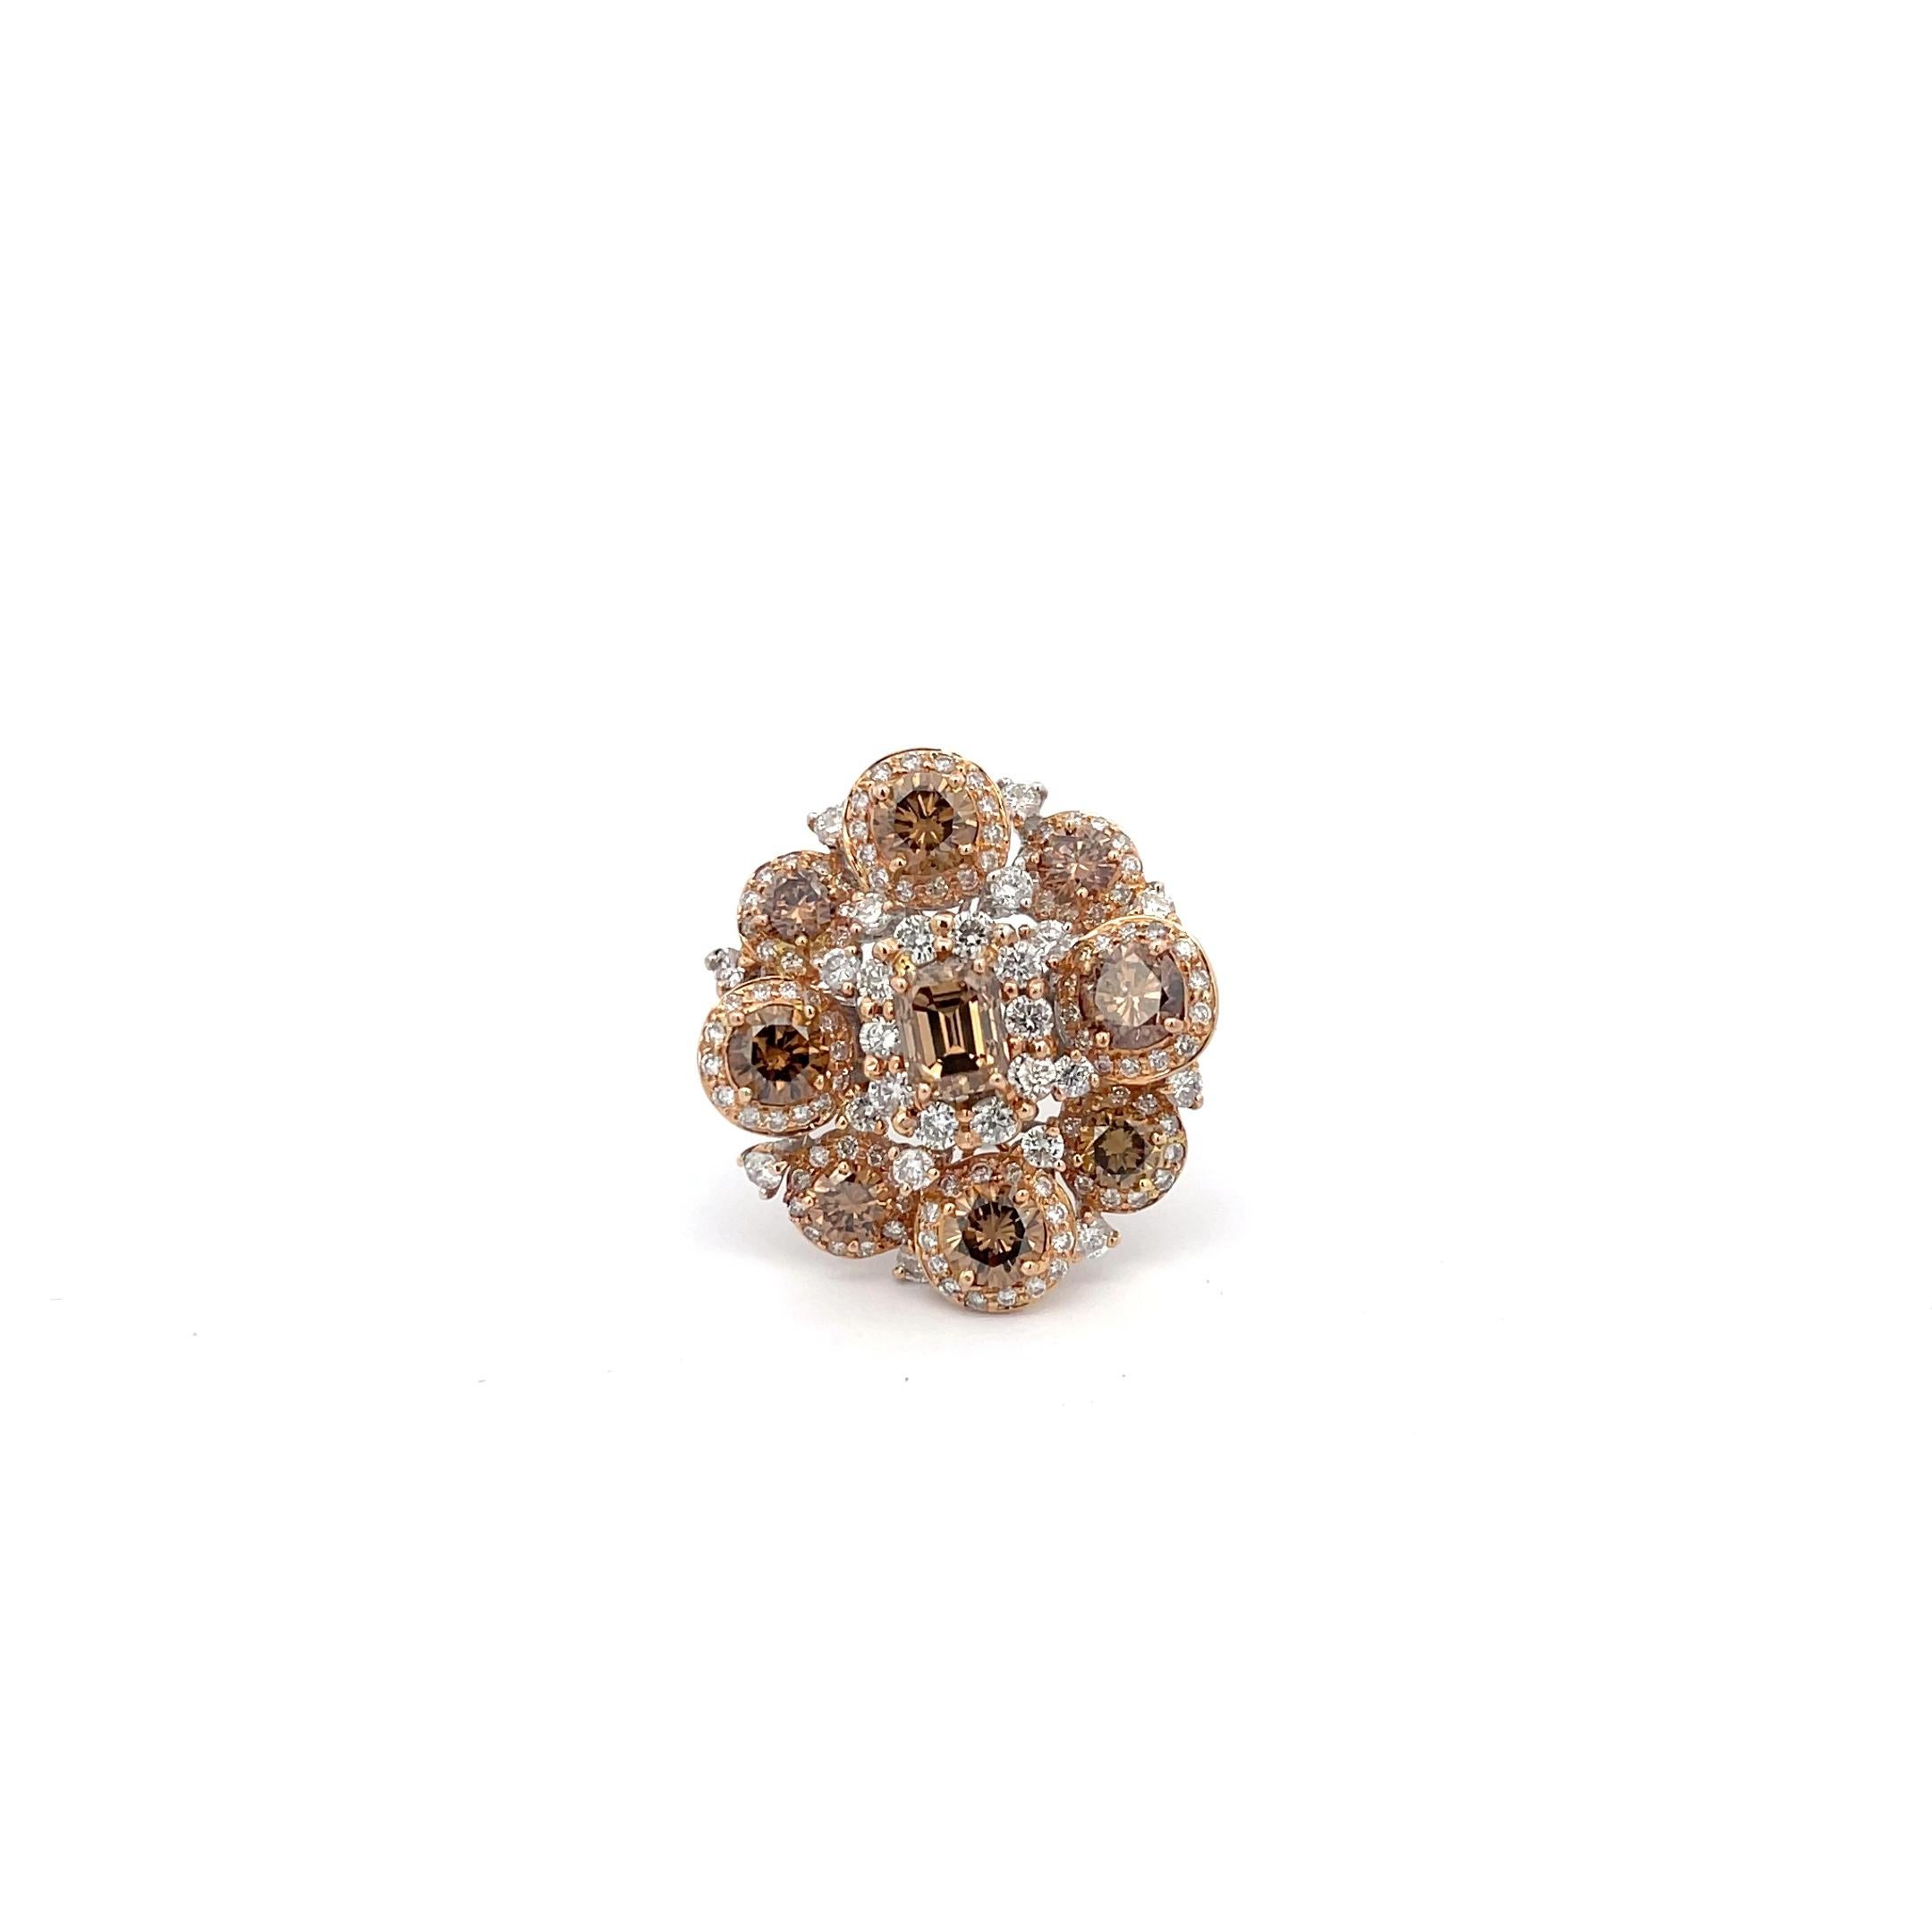 Cognac & White Diamond '5.50ctw' Flower Ring 18K Rose/White Gold. Size 6.25
10.7 Grams